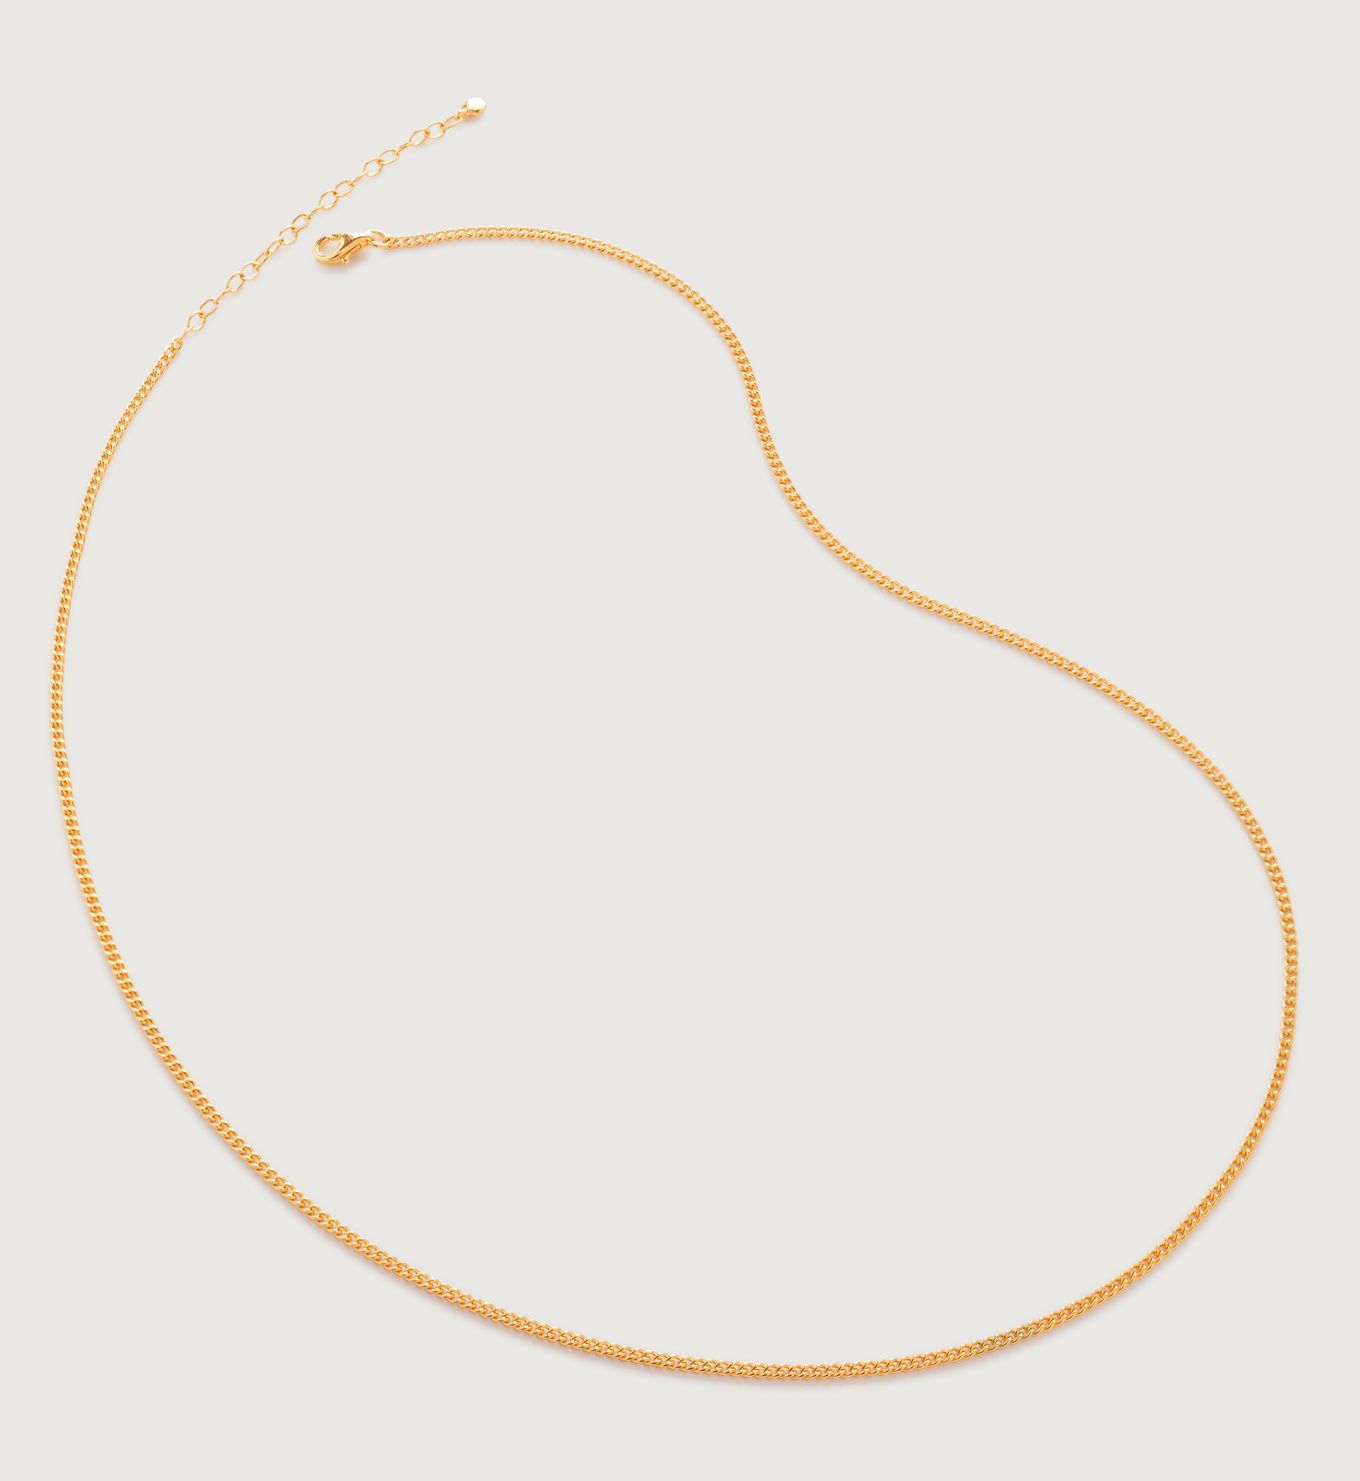 Curb Chain Necklace 46cm-50cm/18-20' | Monica Vinader (US)